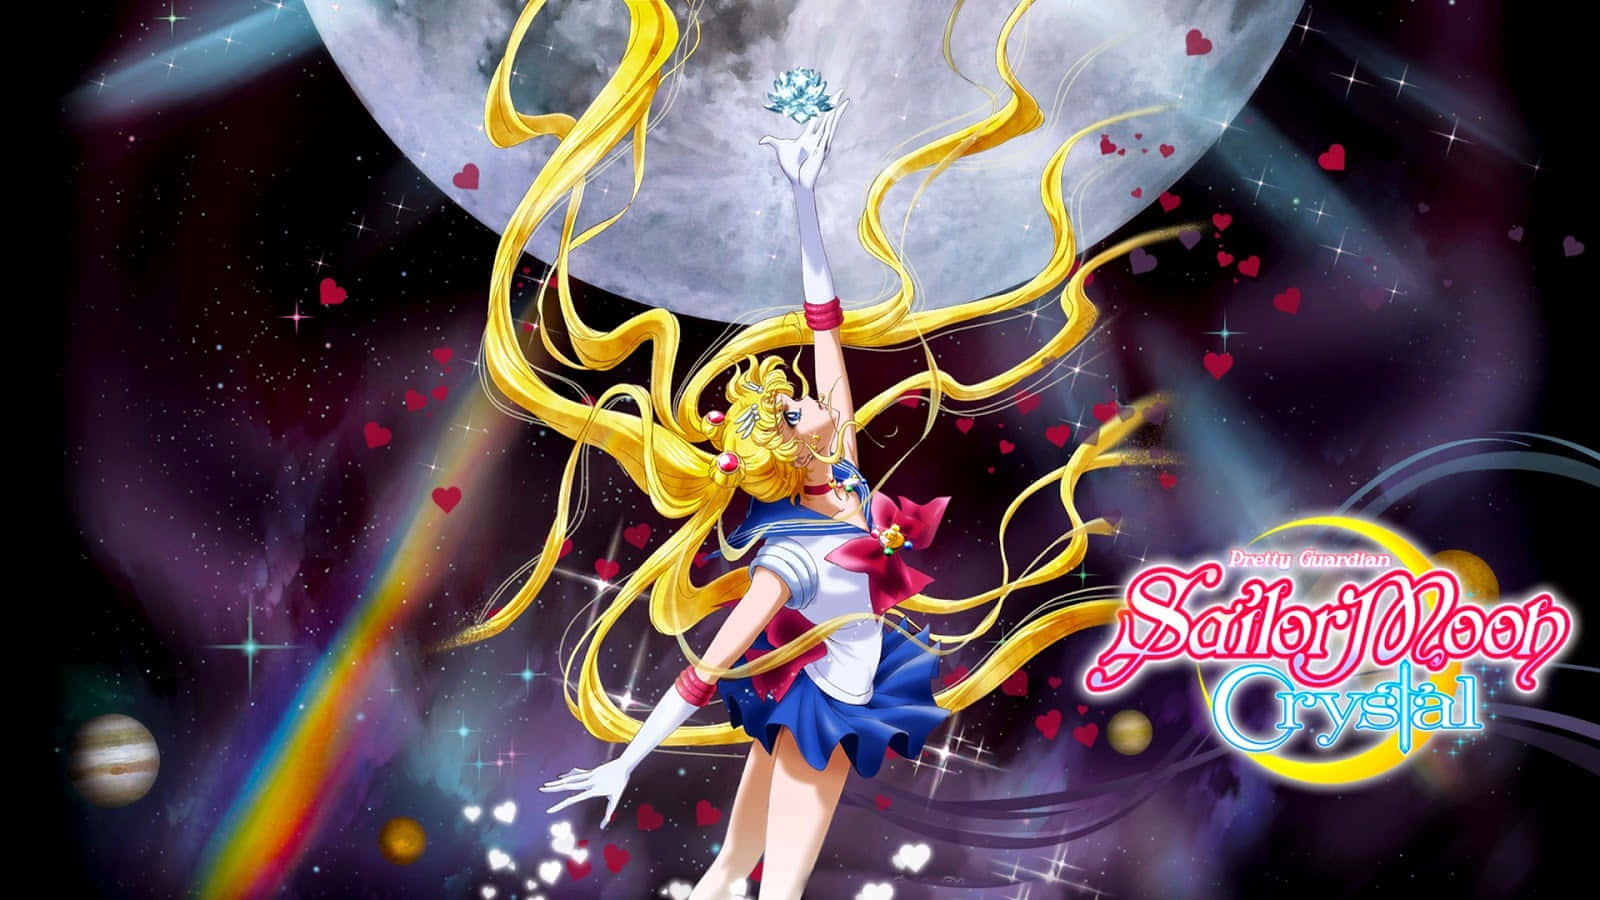 Sailormoon Wird In Eine Magische Welt Transportiert.